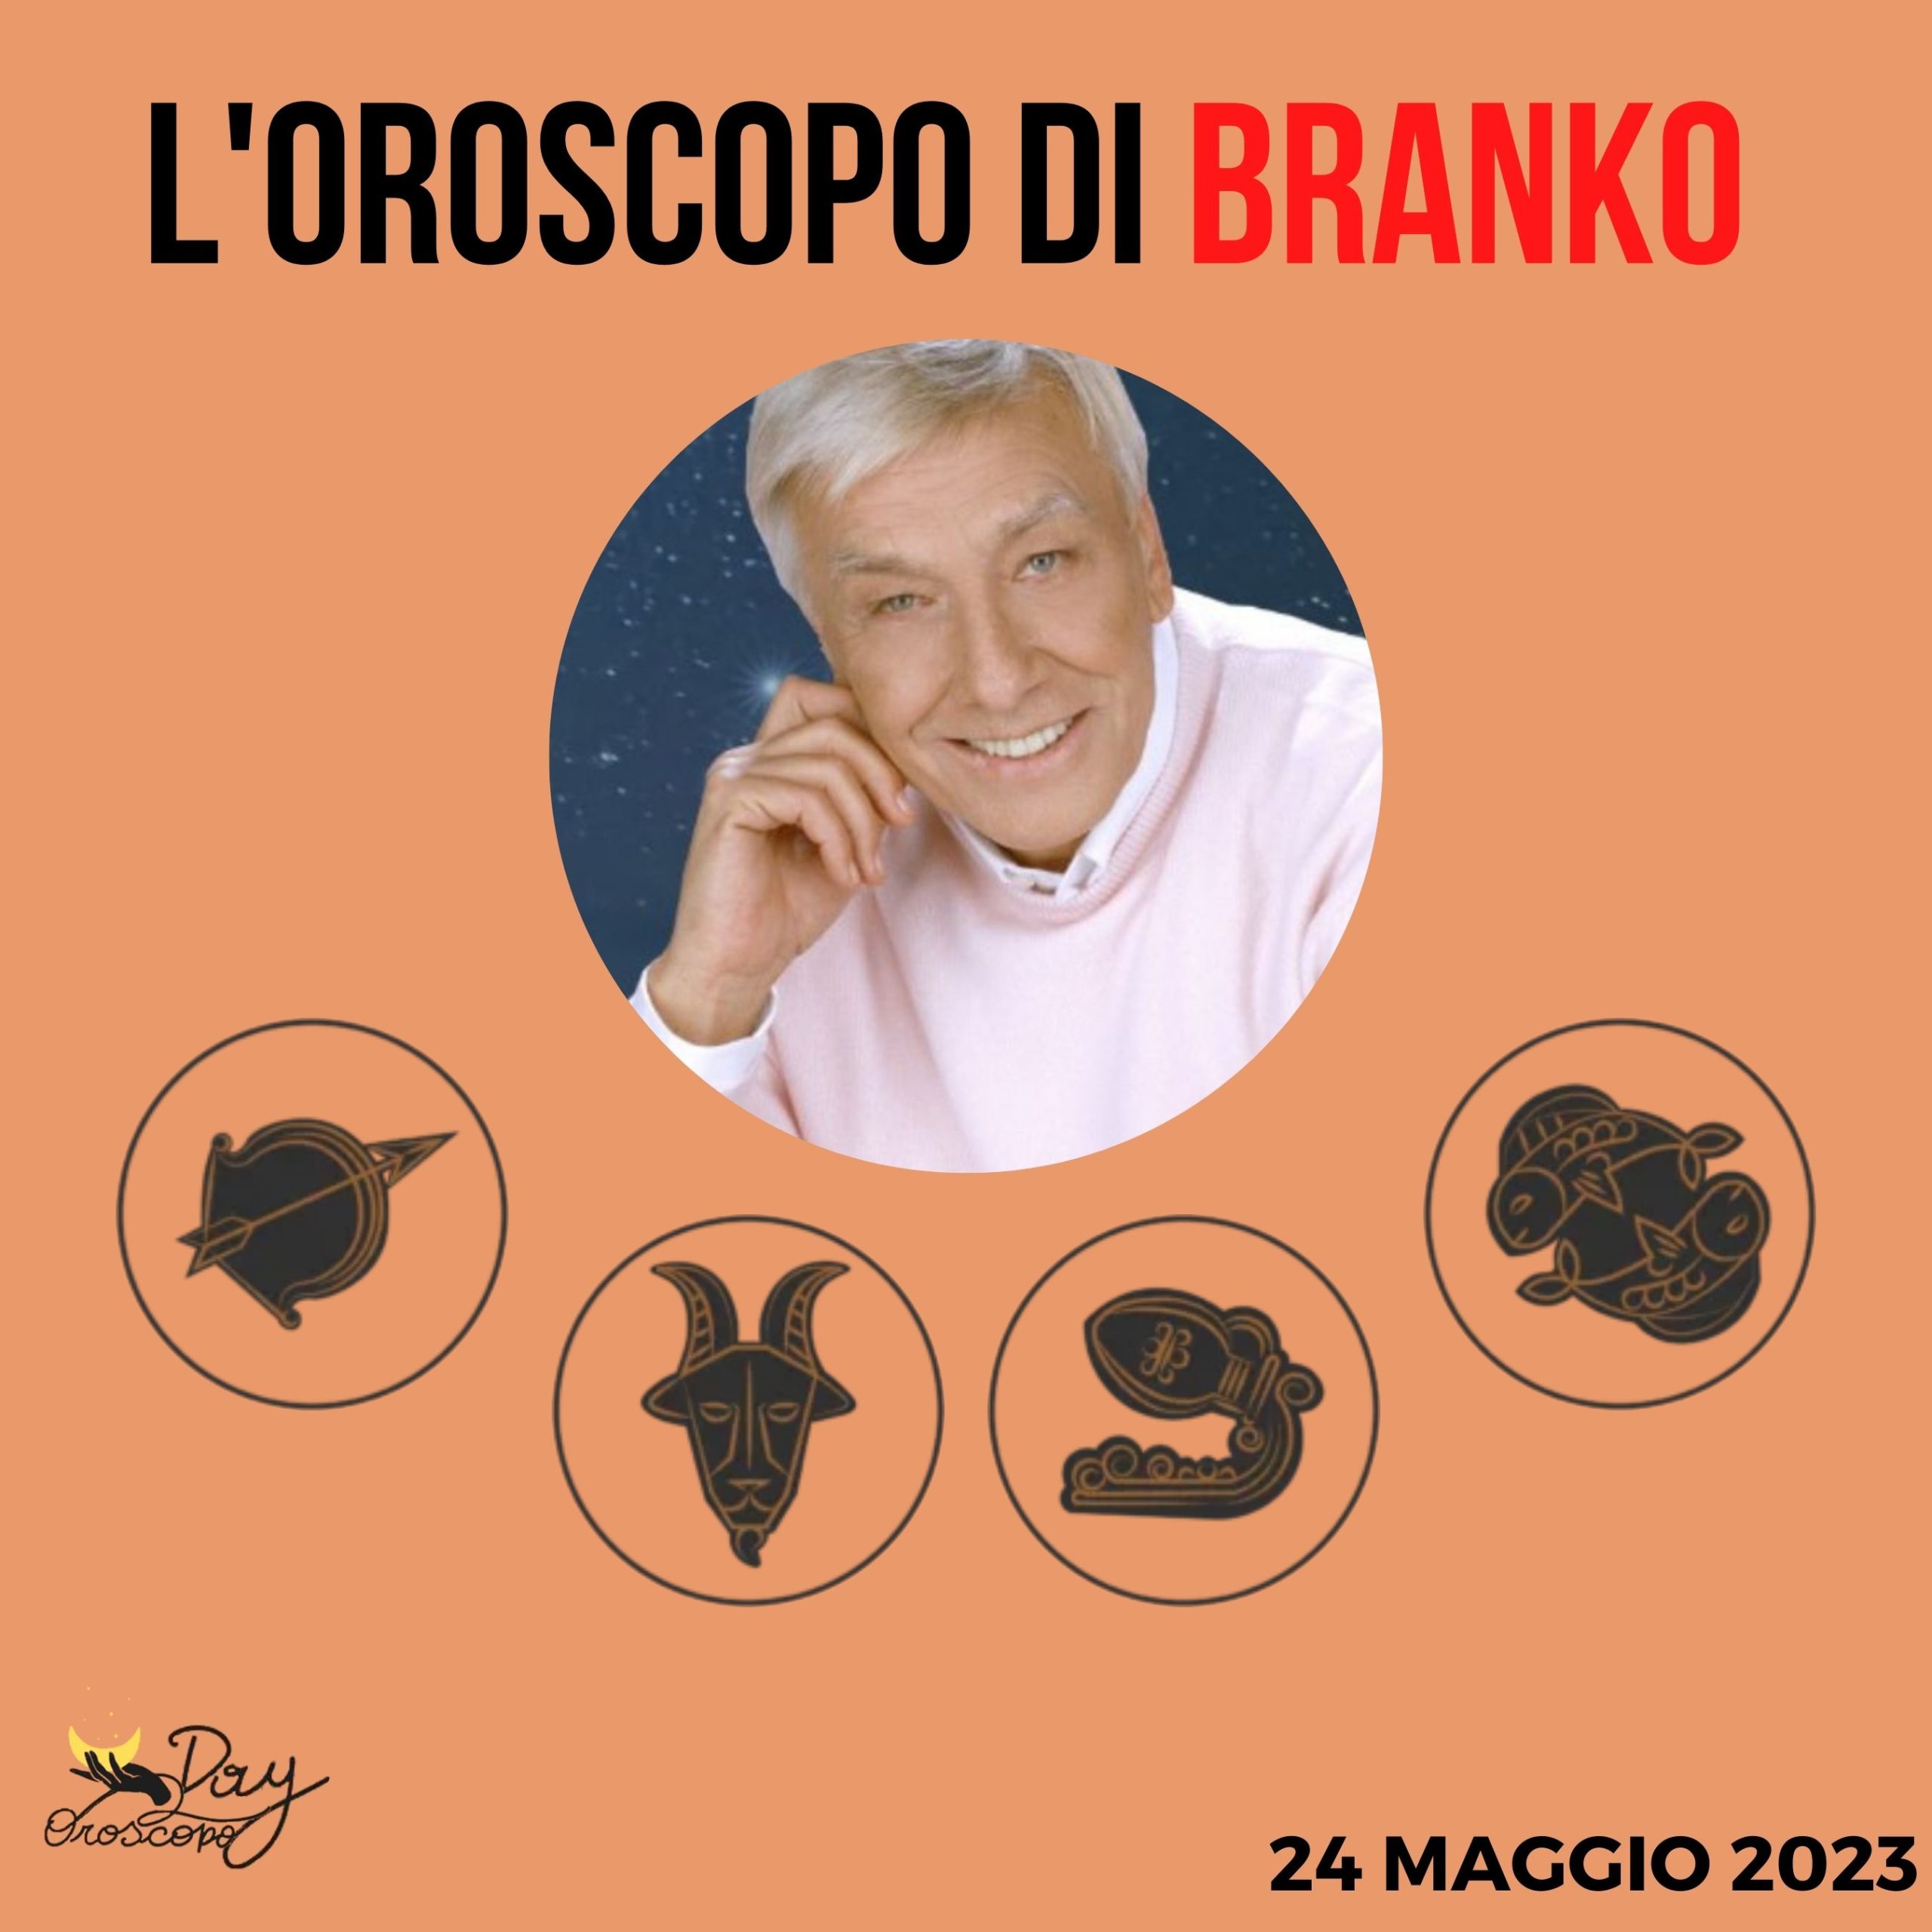 Oroscopo oggi domani Branko 24 maggio Sagittario Capricorno Acquario Pesci